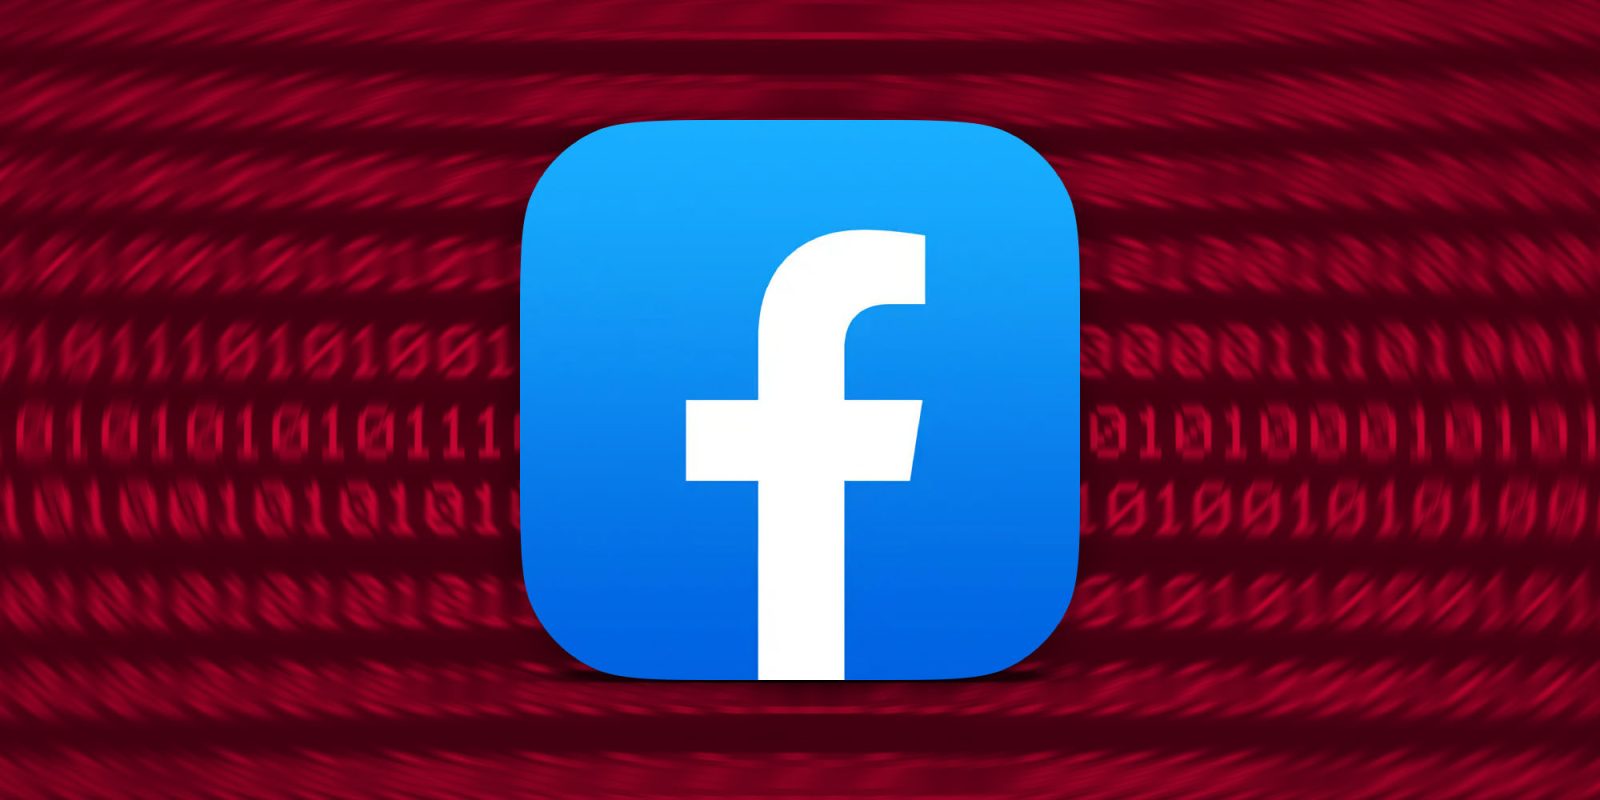 شکایت سیاست حفظ حریم خصوصی فیس بوک